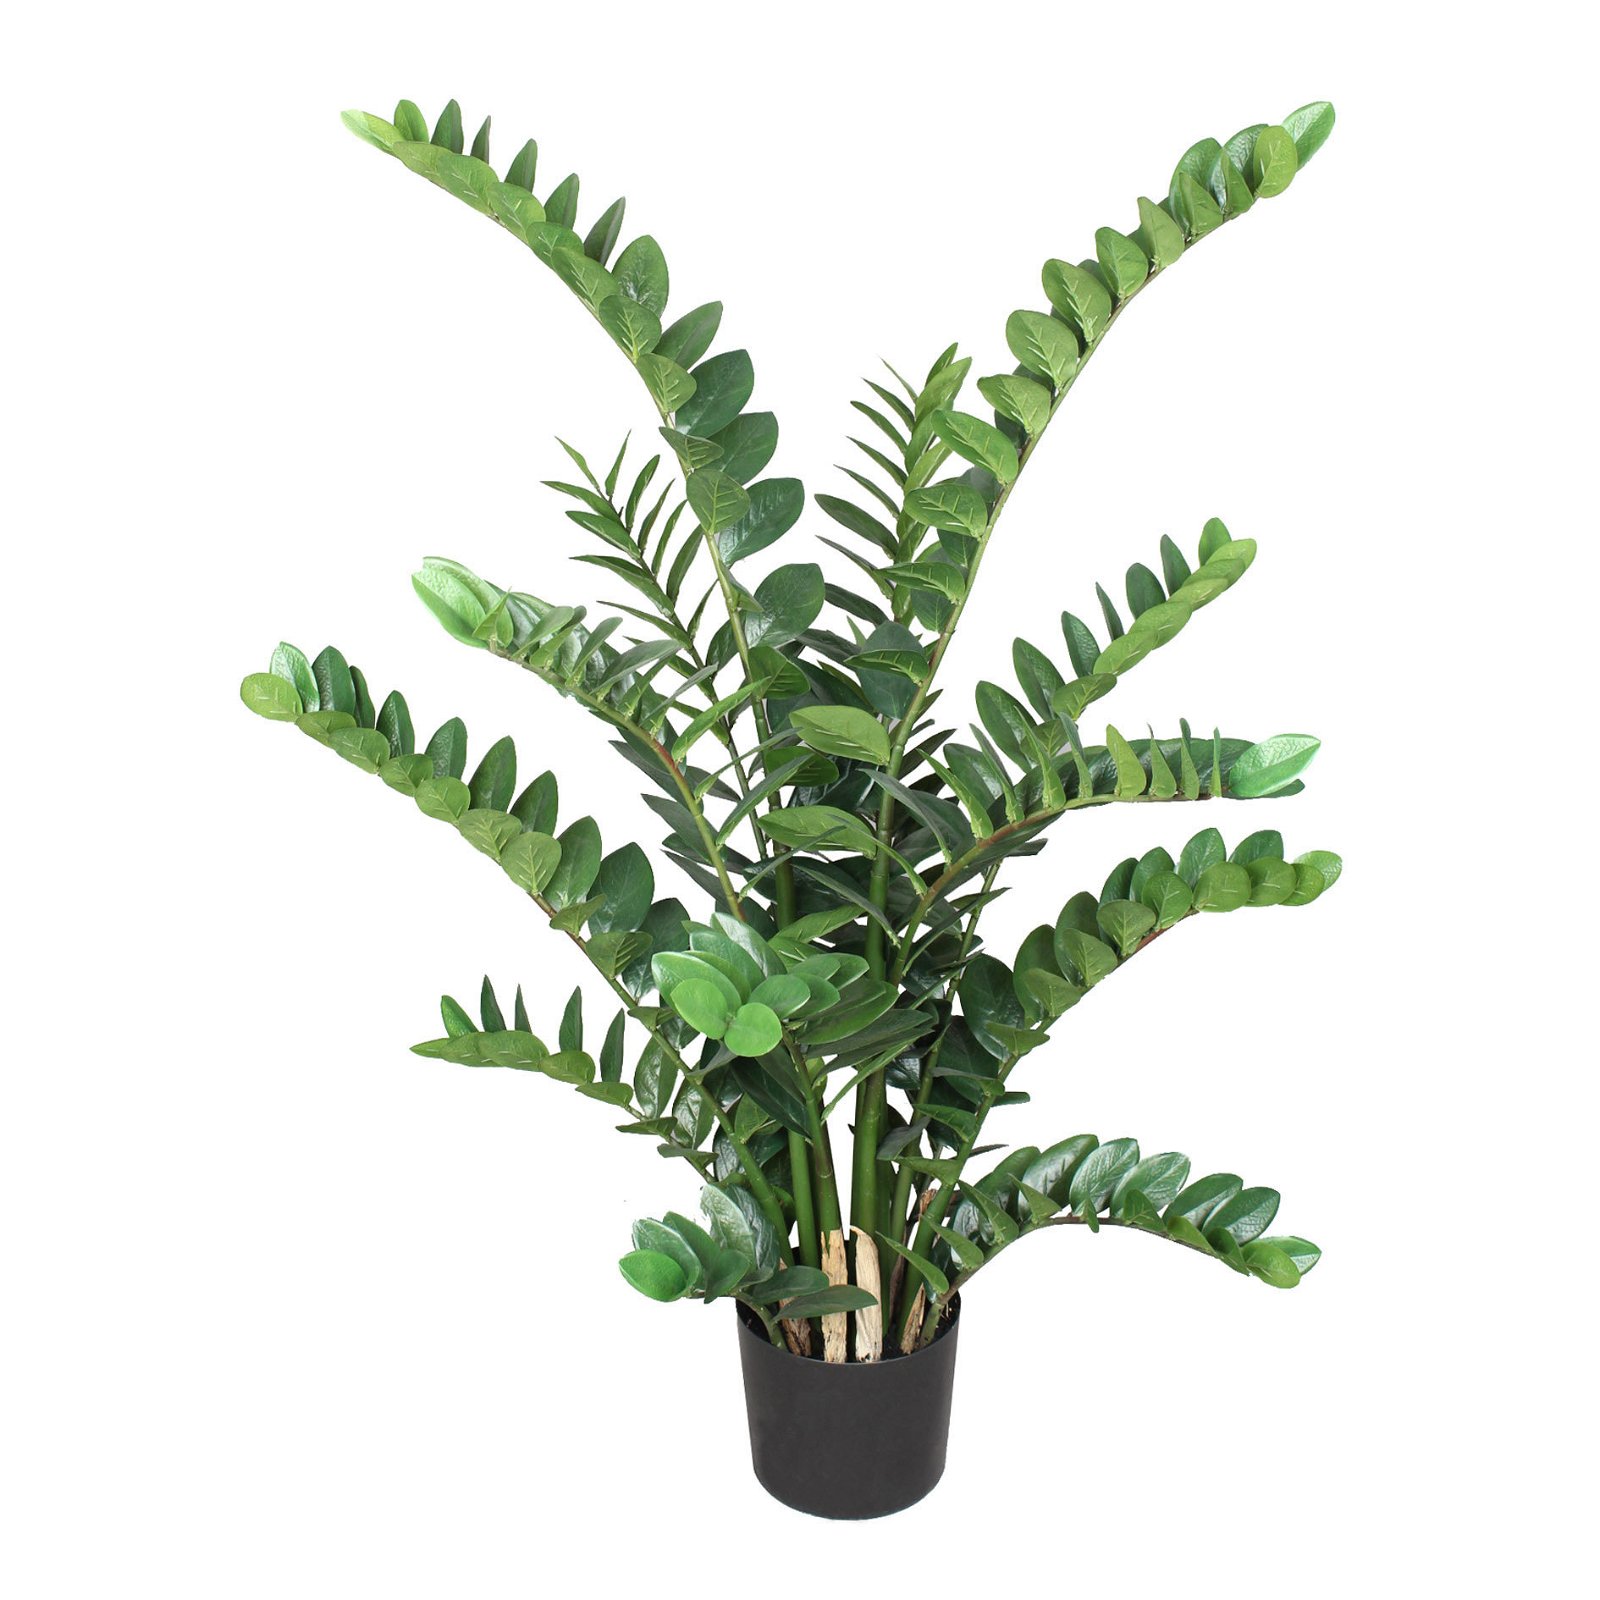 Kunstpflanze Zamifolia mit 15 Stängeln, im Kunststofftopf, ca. 130 cm